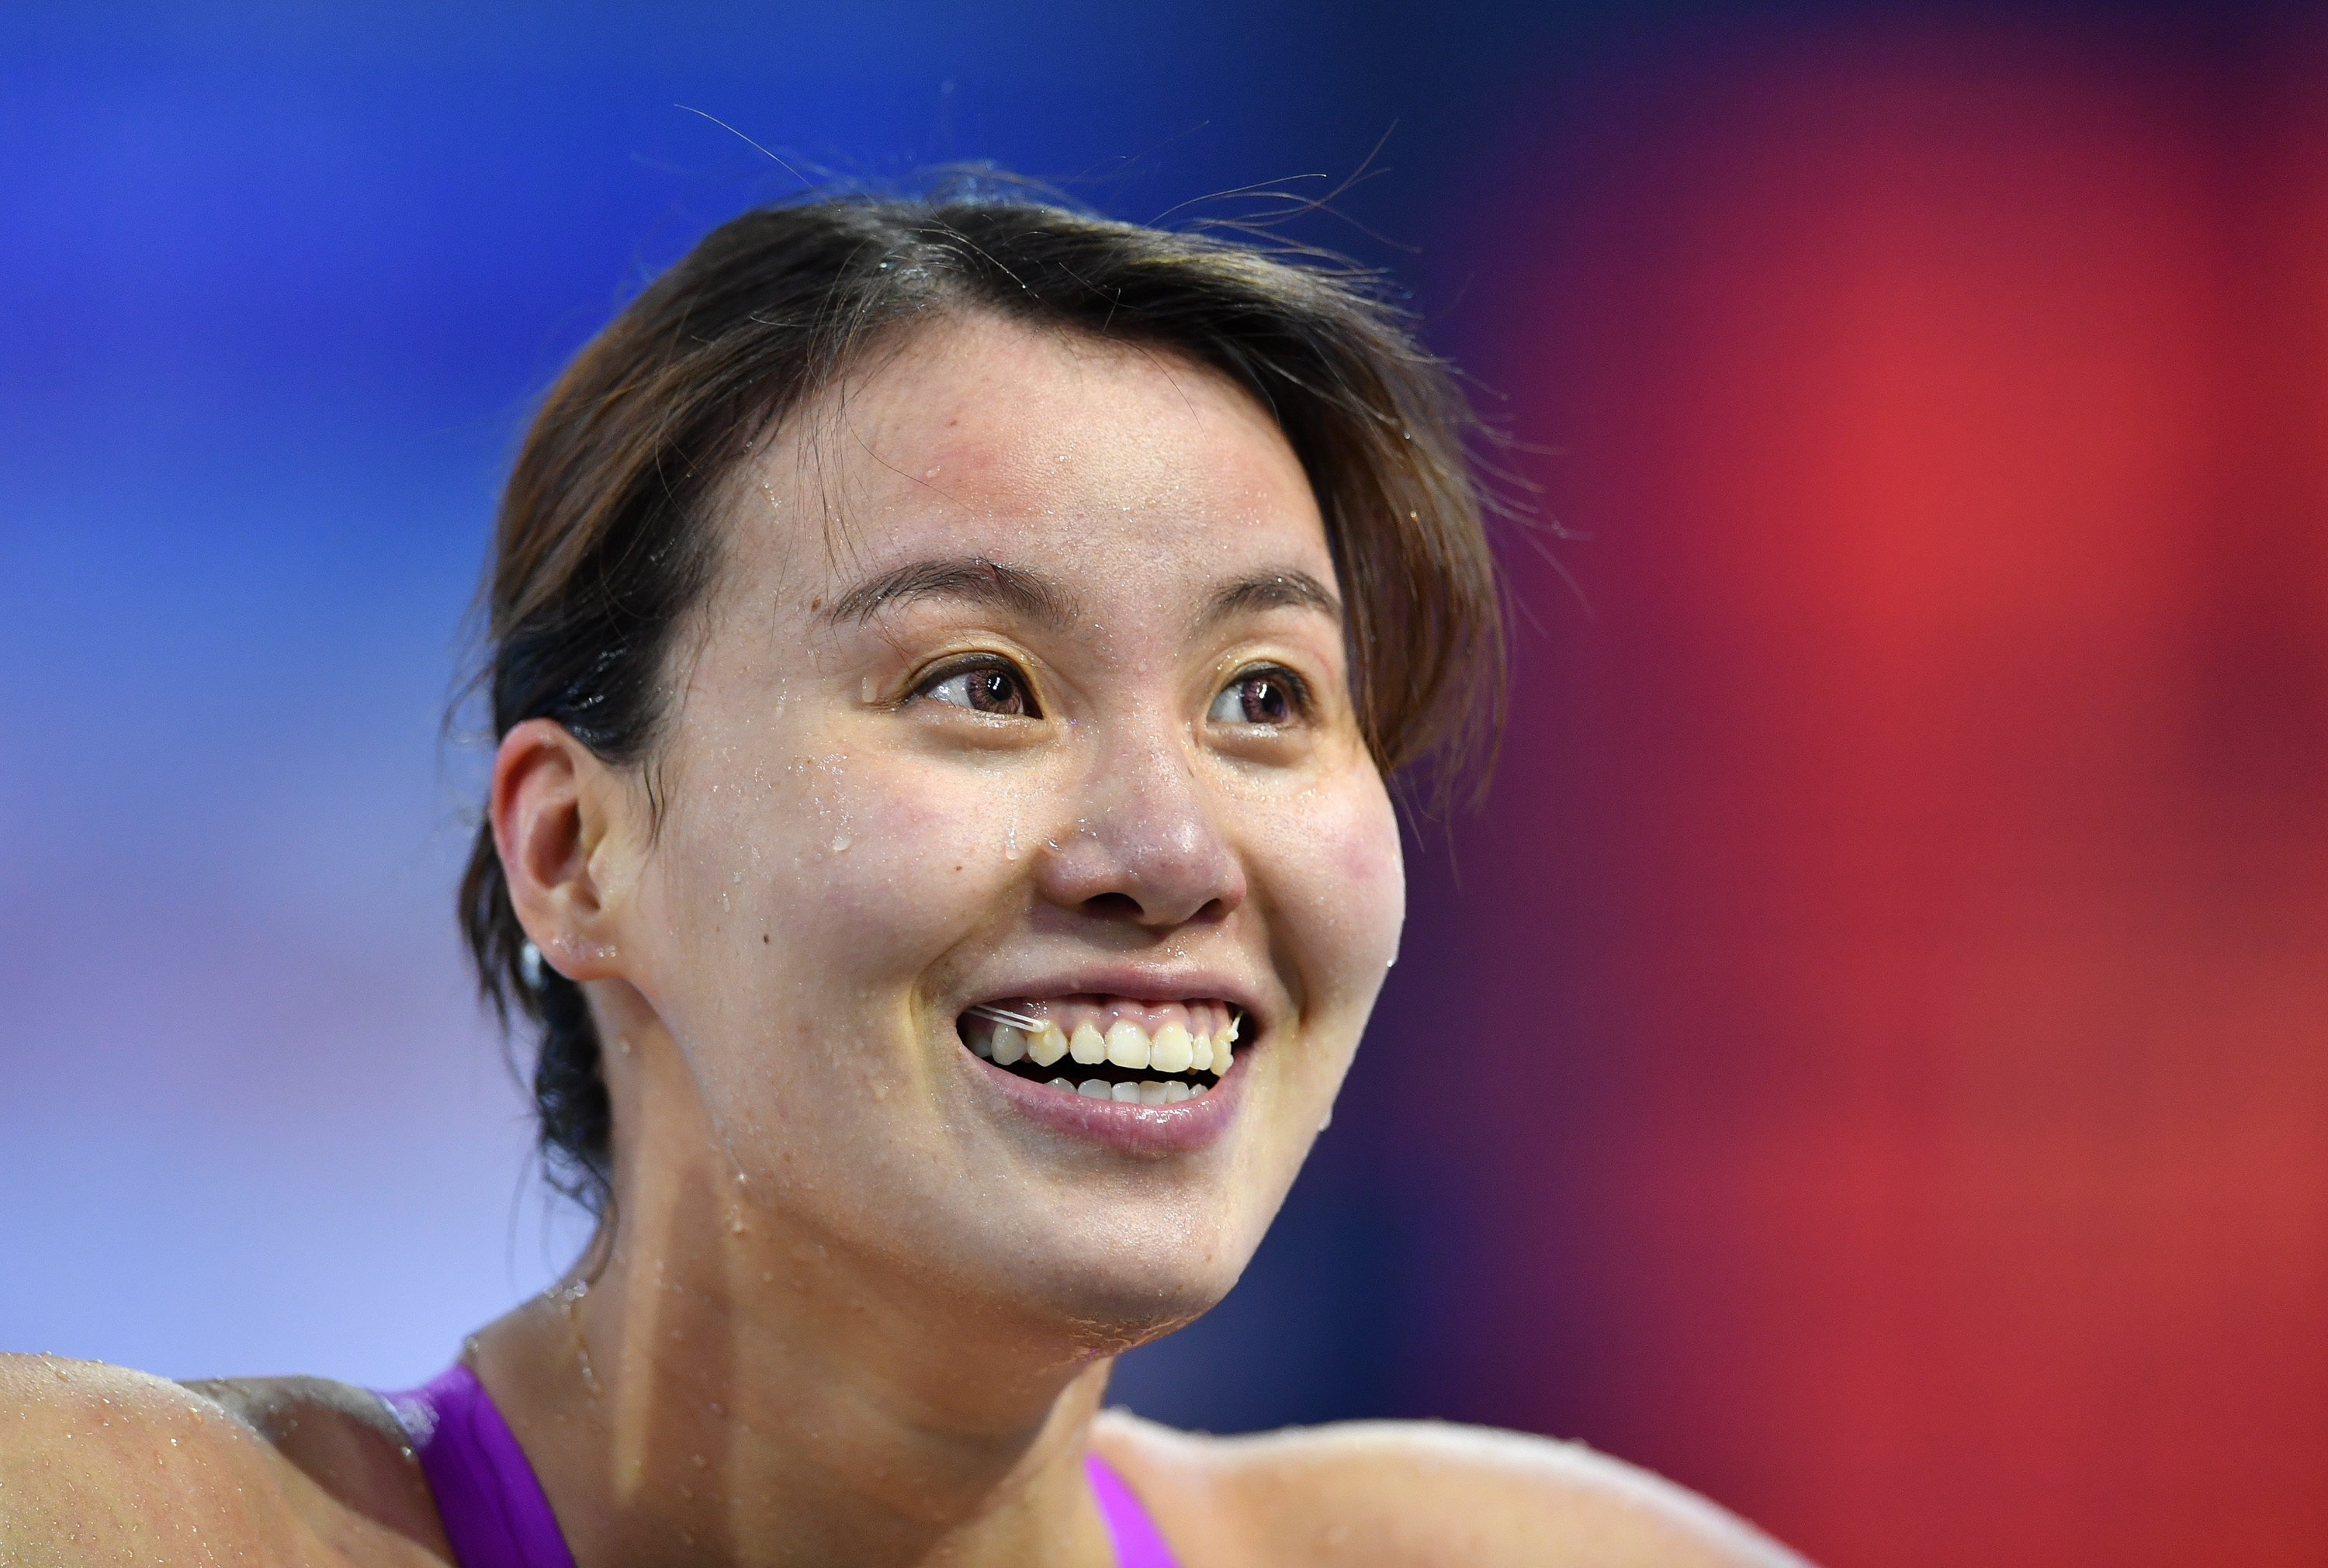 fina冠军系列赛傅园慧获得女子100米仰泳冠军